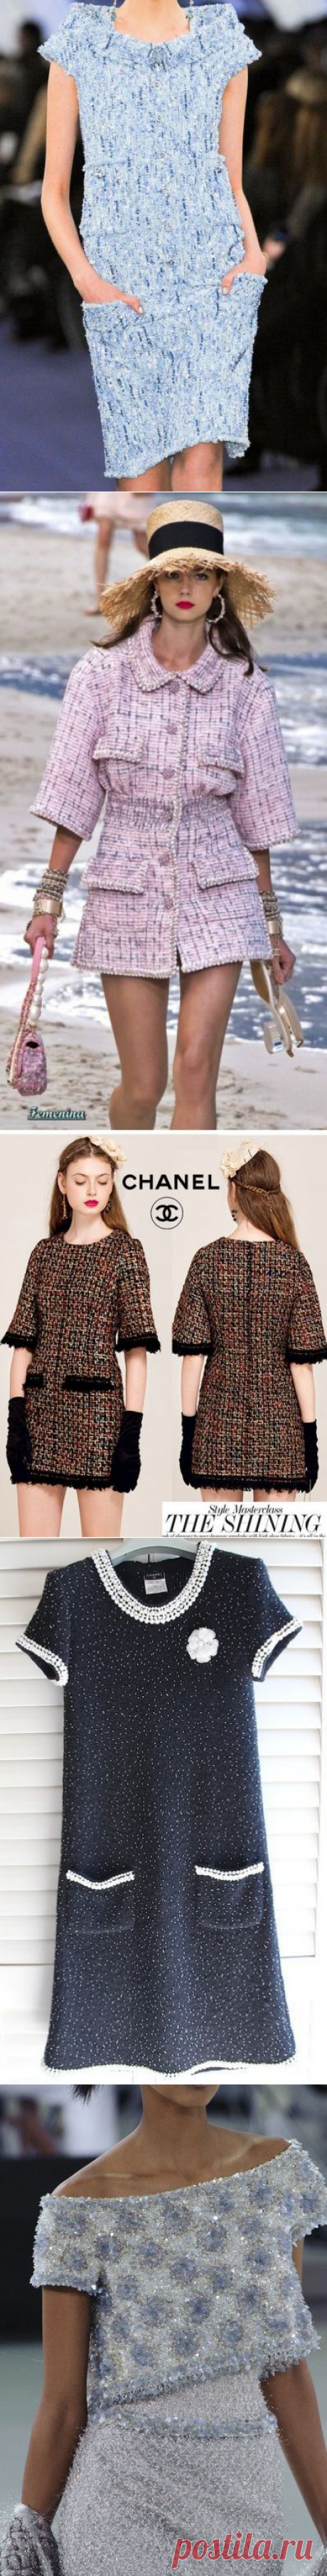 Платья в стиле Chanel: подборка классических фасонов - Икона стиля